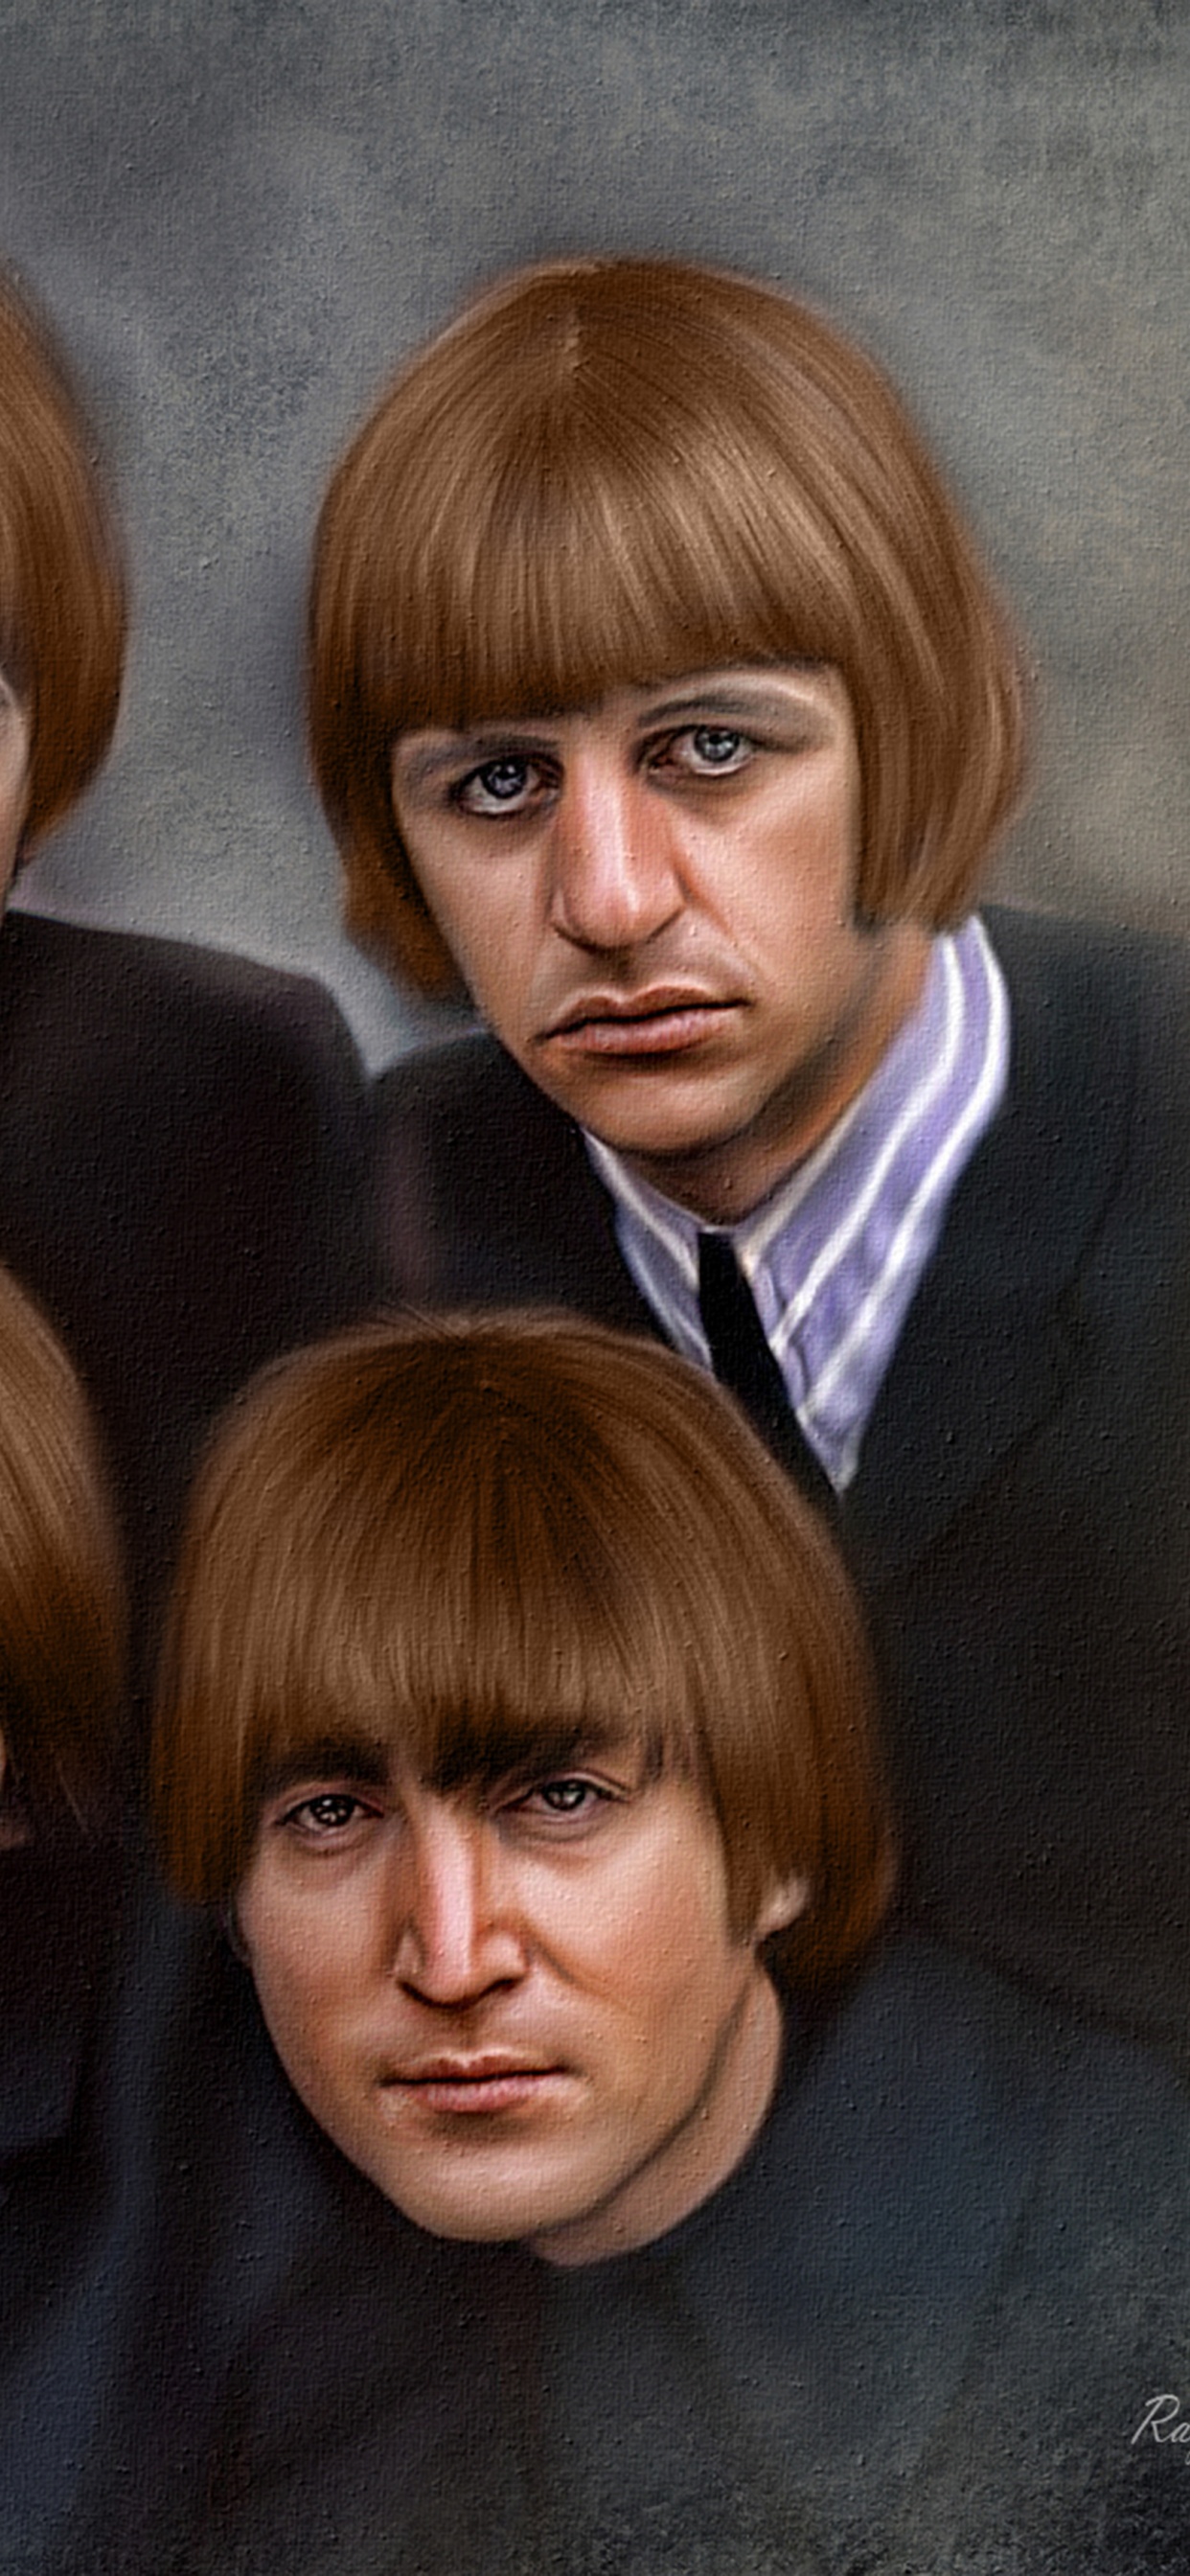 约翰*列侬, 保罗*麦卡特尼, 乔治*哈里森, Ringo Starr, 披头士 8x10 壁纸 1242x2688 允许